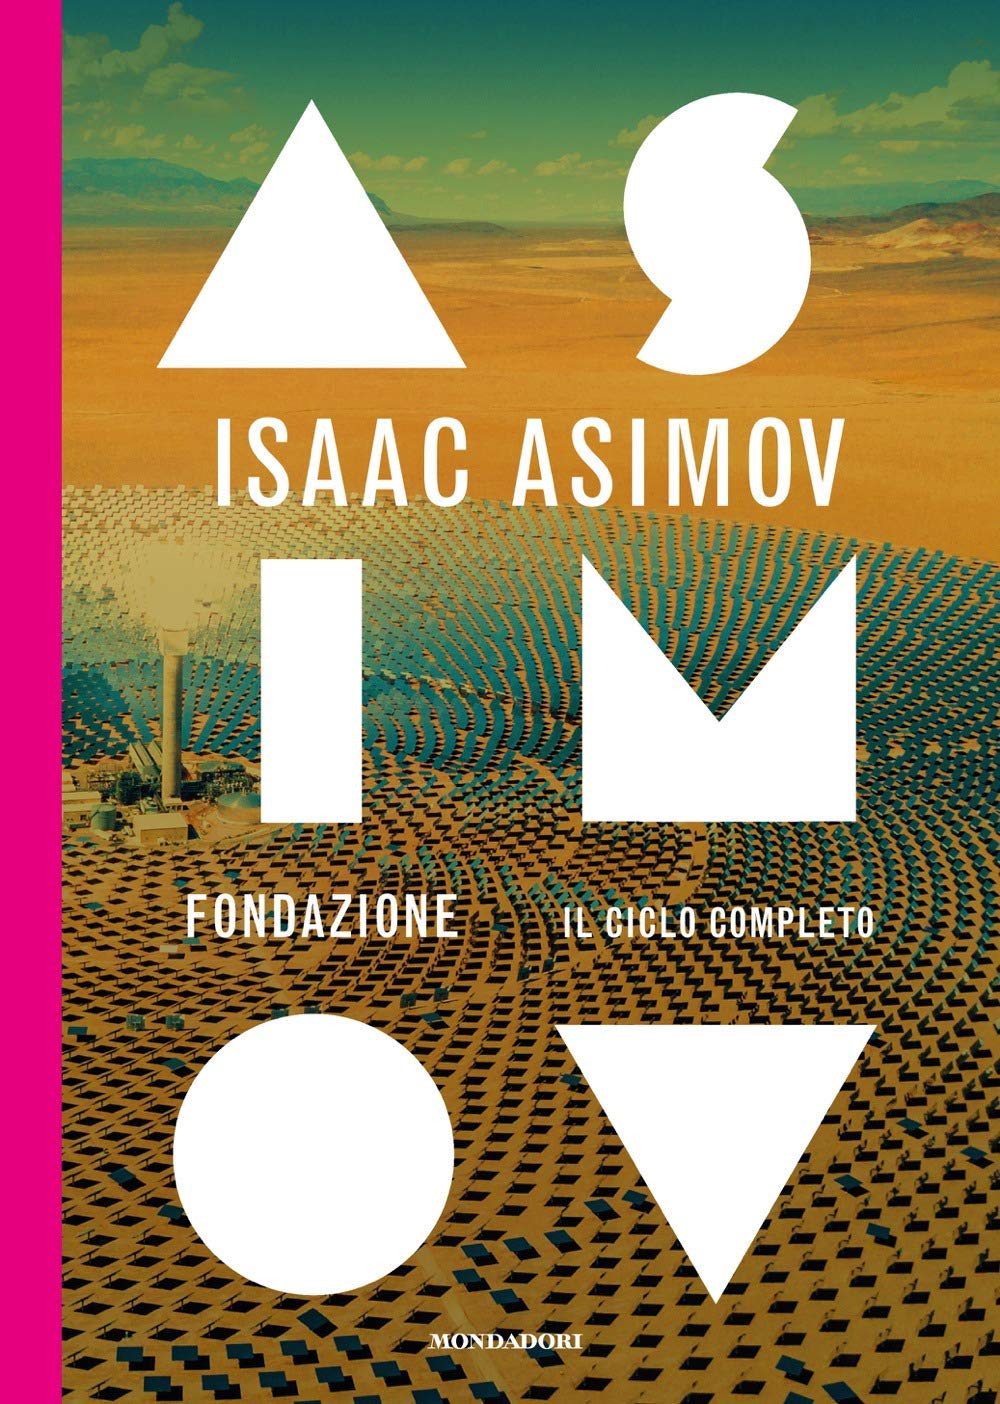 Fondazione di Isaac Asimov il ciclo completo